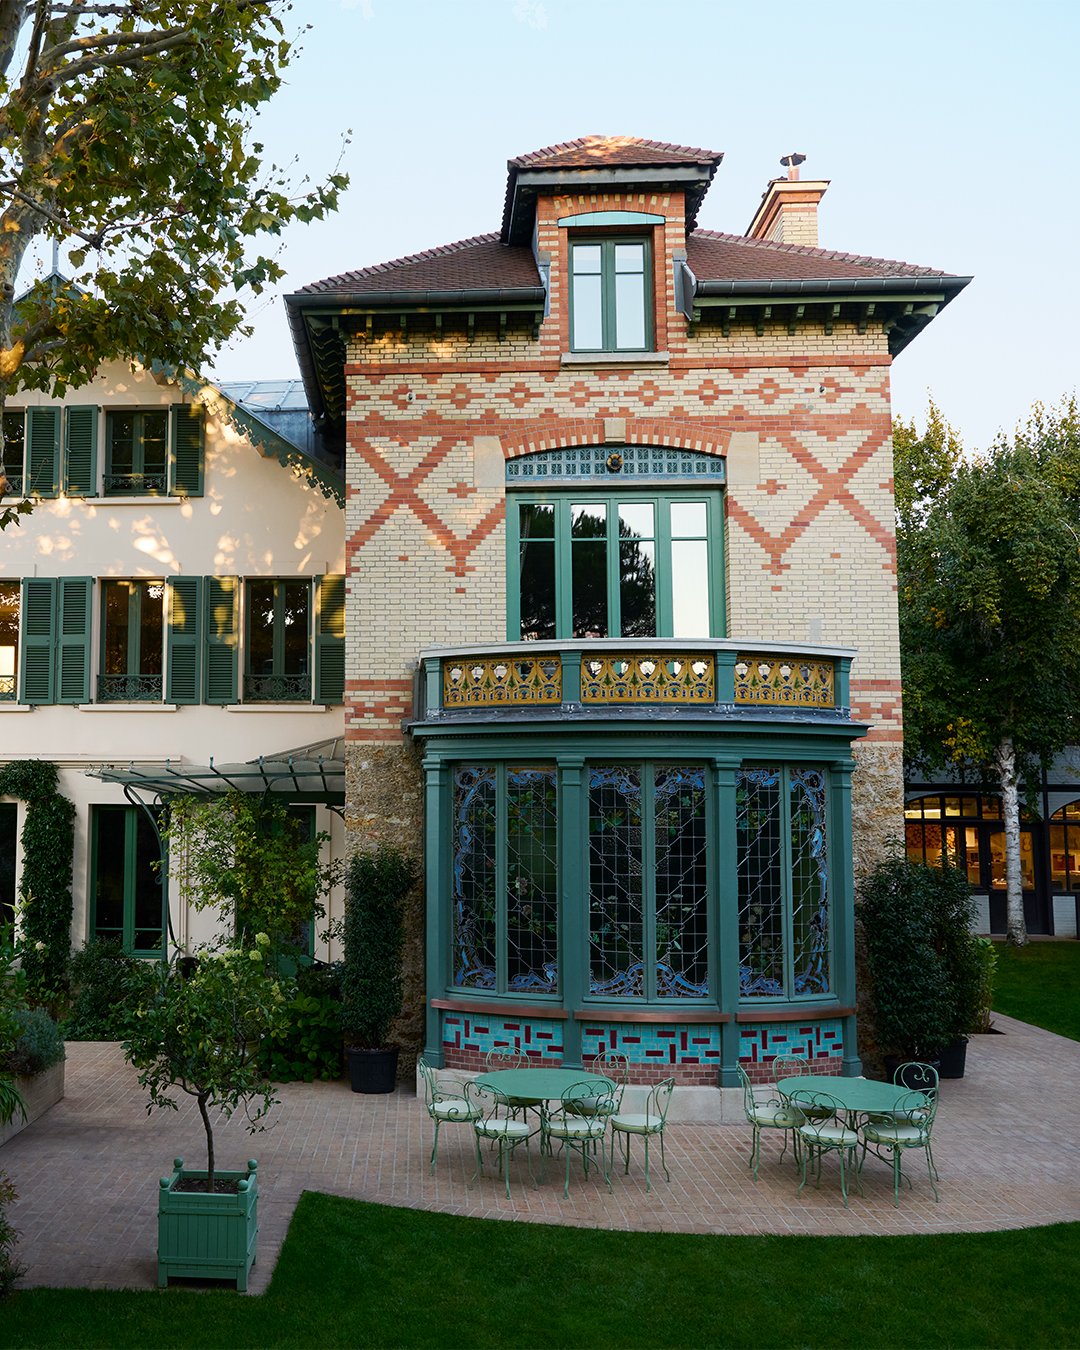 توییتر \ Louis Vuitton در توییتر: "A home for generations to come. Just outside of Paris, #LouisVuitton builds ateliers in laying the for a Maison that today. Discover